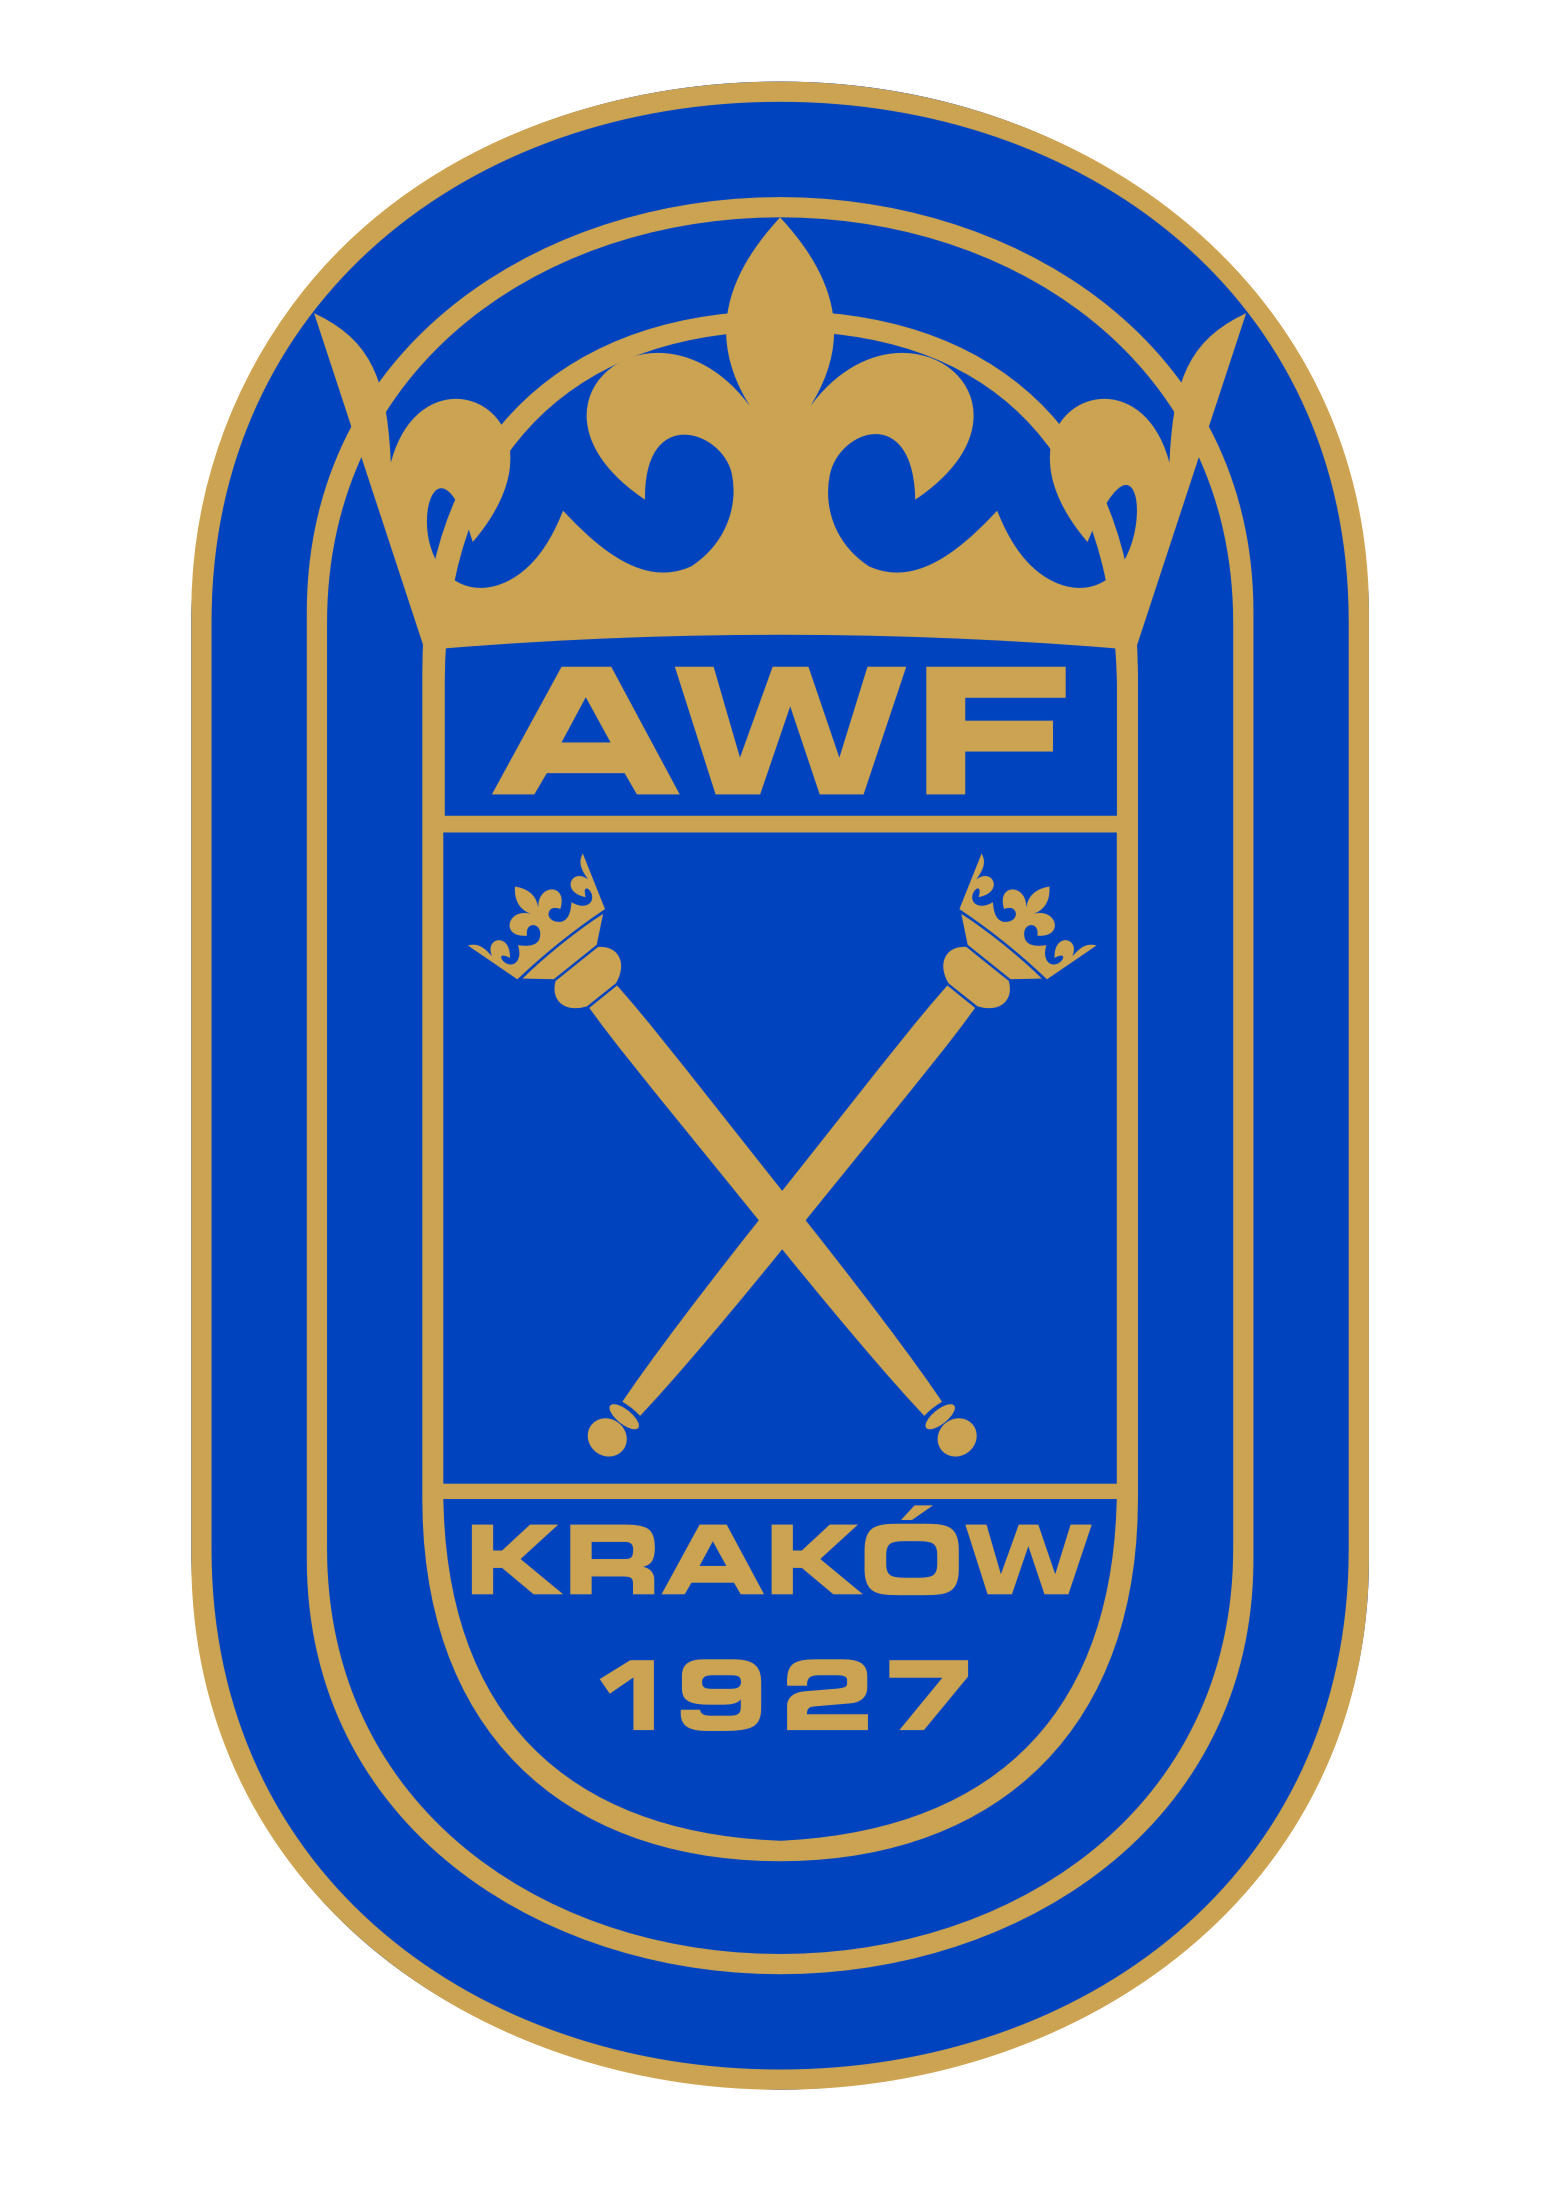 AWF Krakowie Logo photo - 1